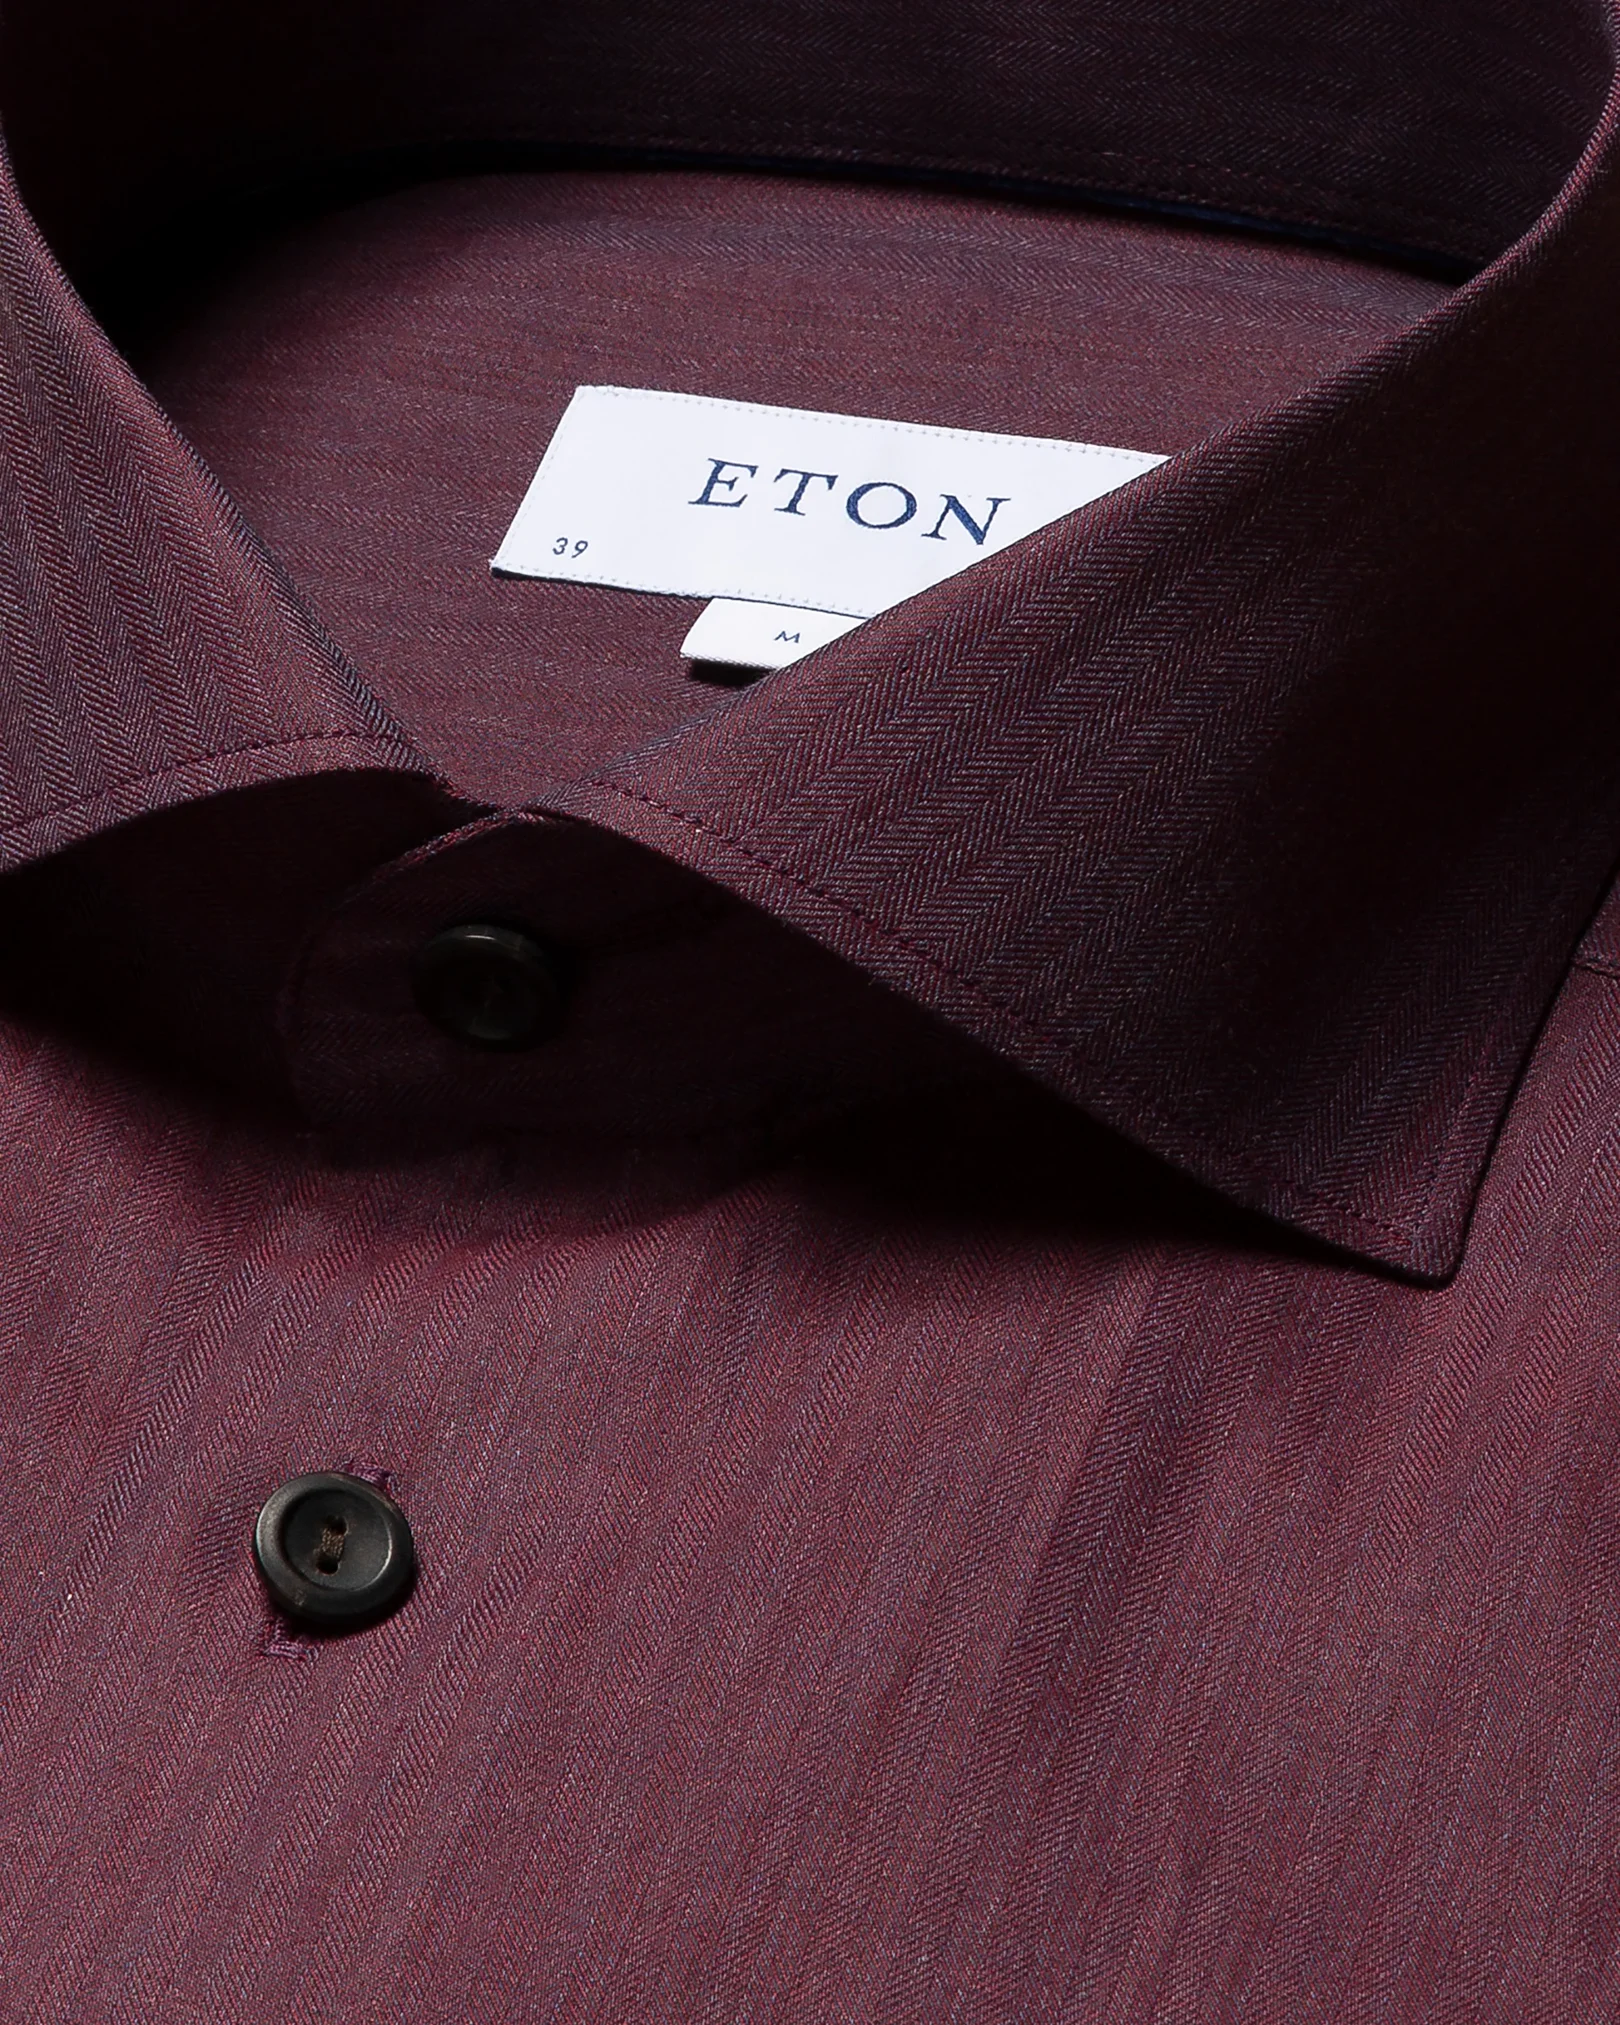 Eton - red flannel